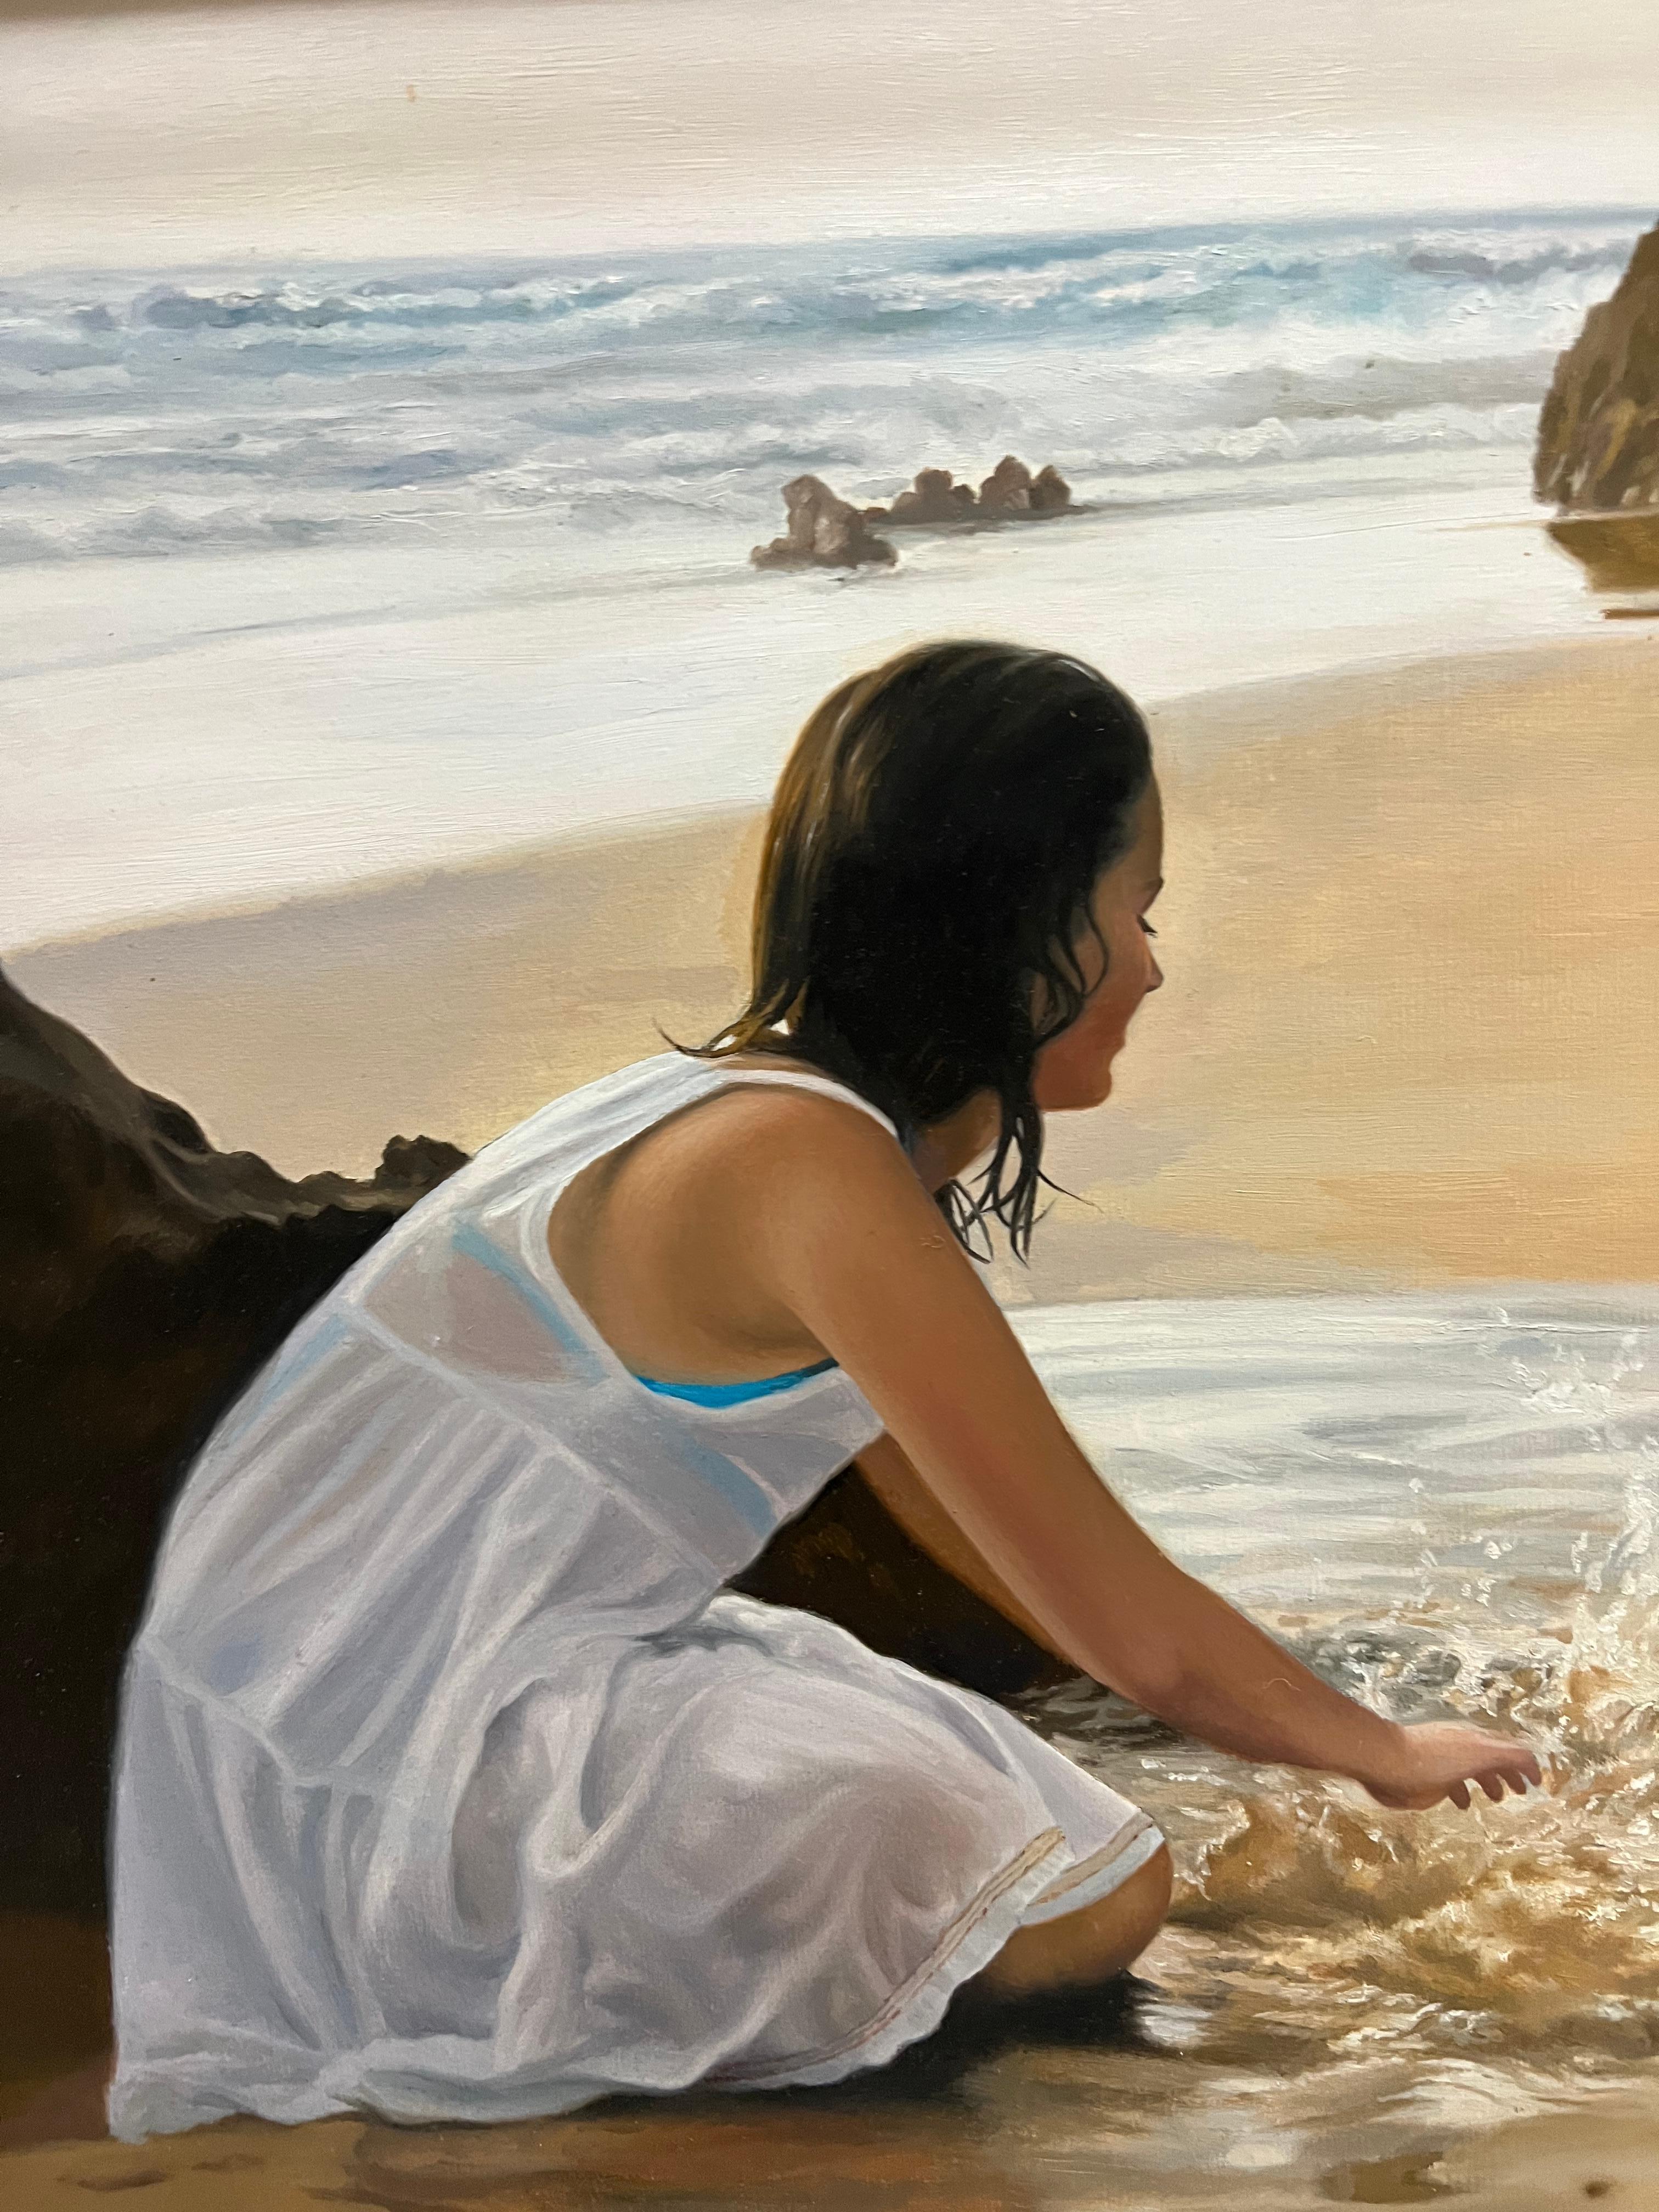 En La Playa (At the Beach) - Painting by Javier Pedrosa 